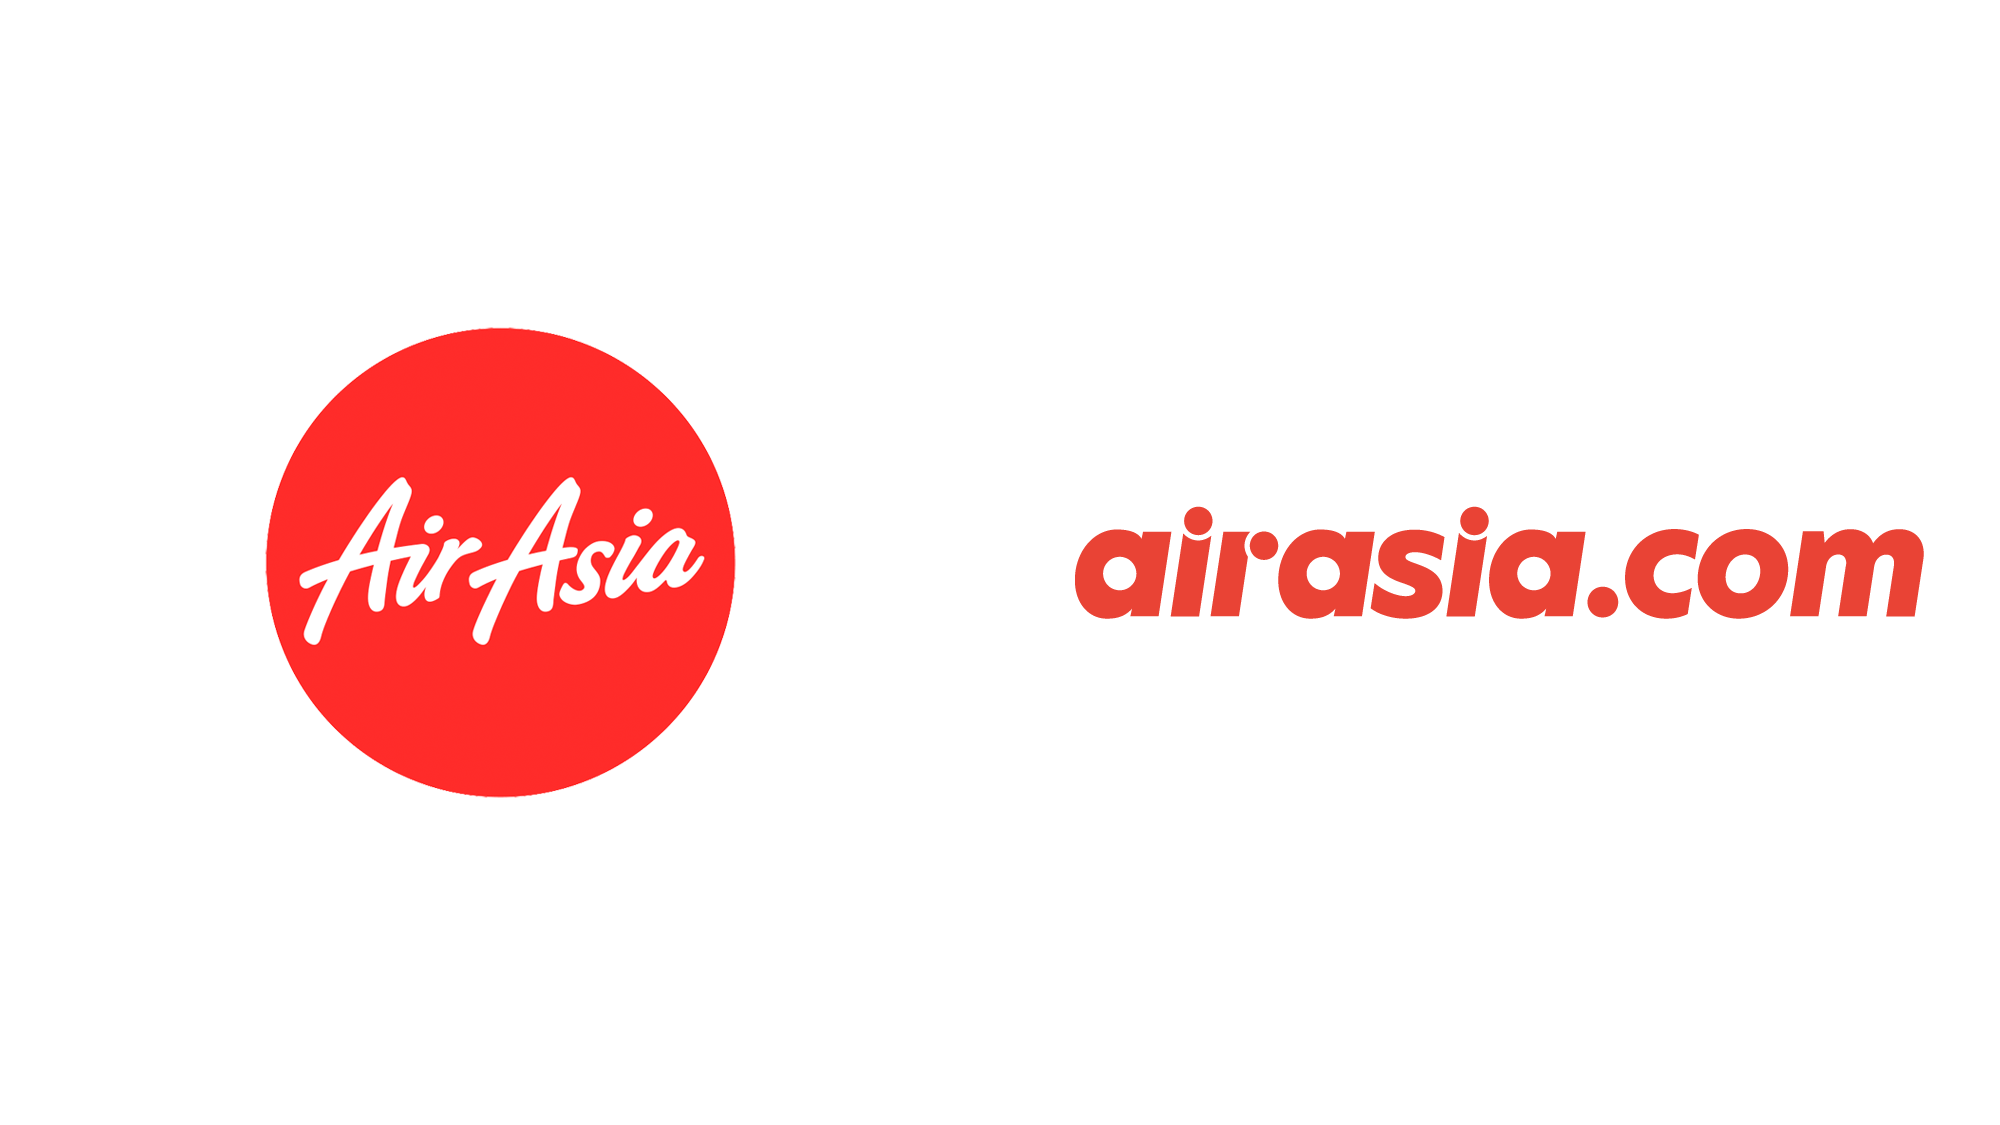 Brand New: New Logo for Airasia